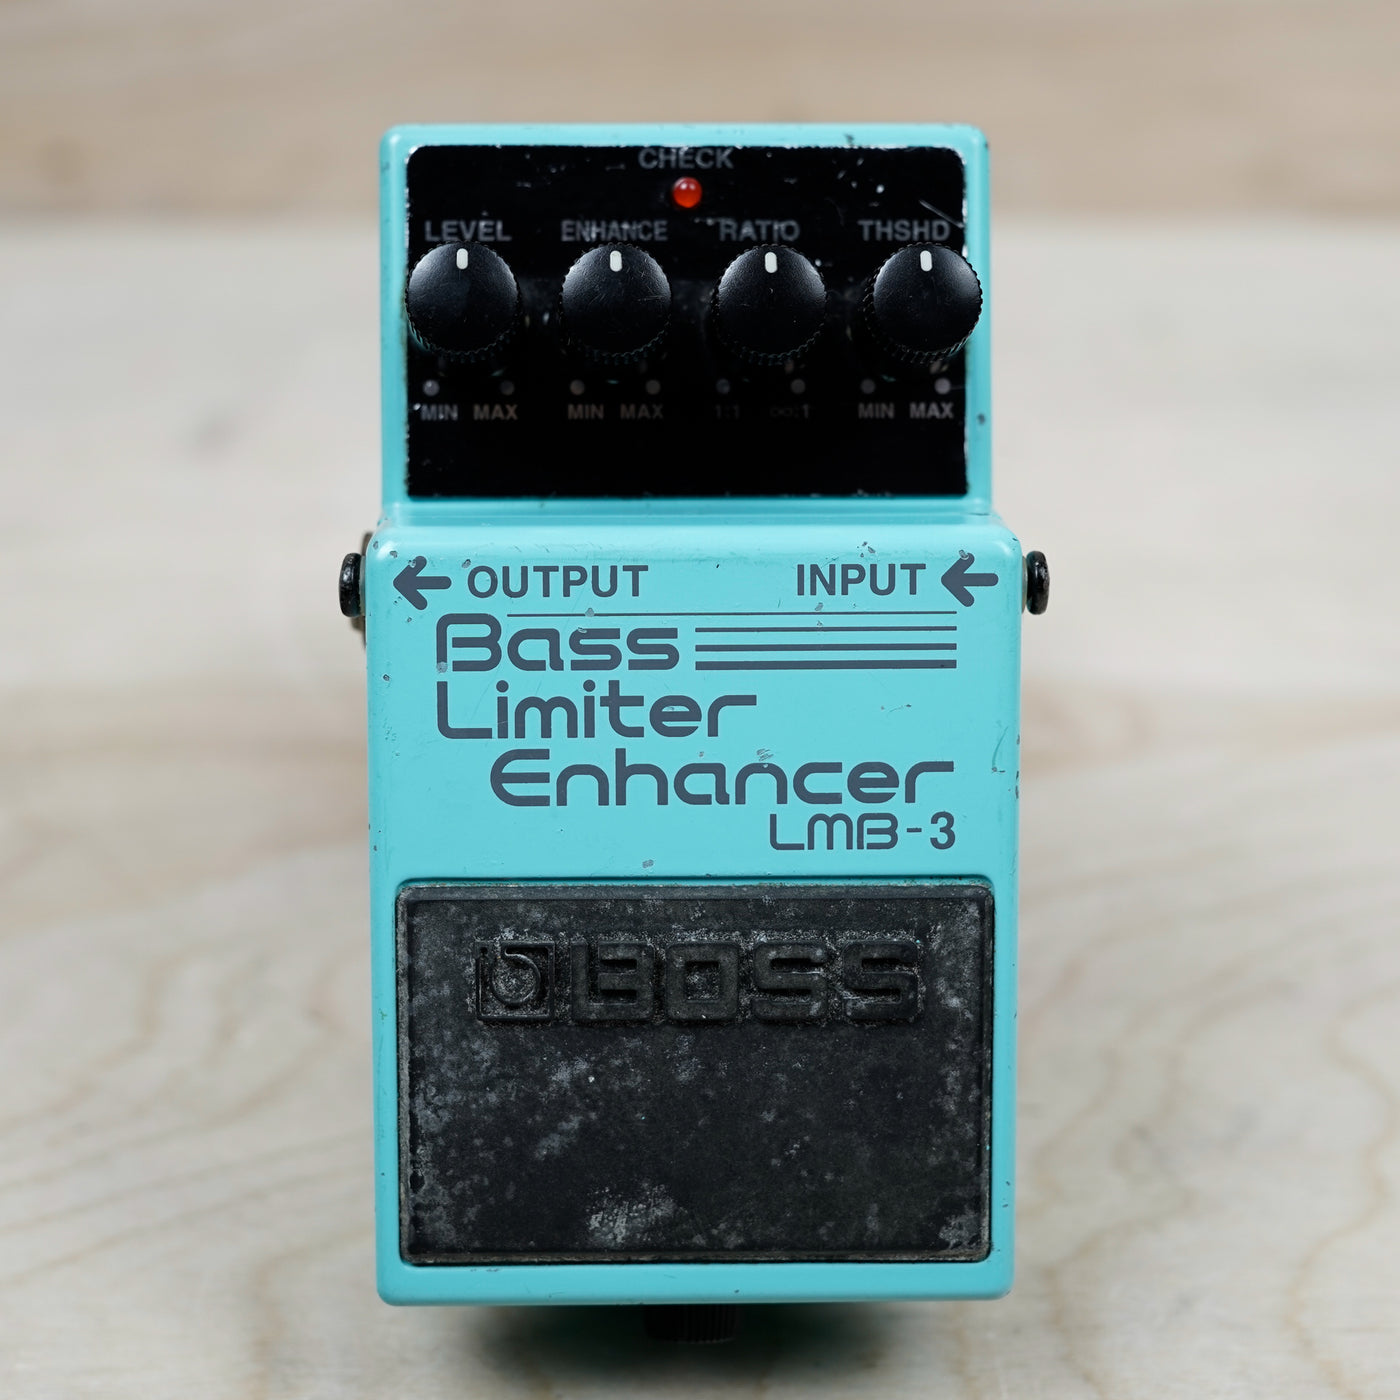 Boss LMB-3 Bass Limiter Enhancer (Silver Label) Blue